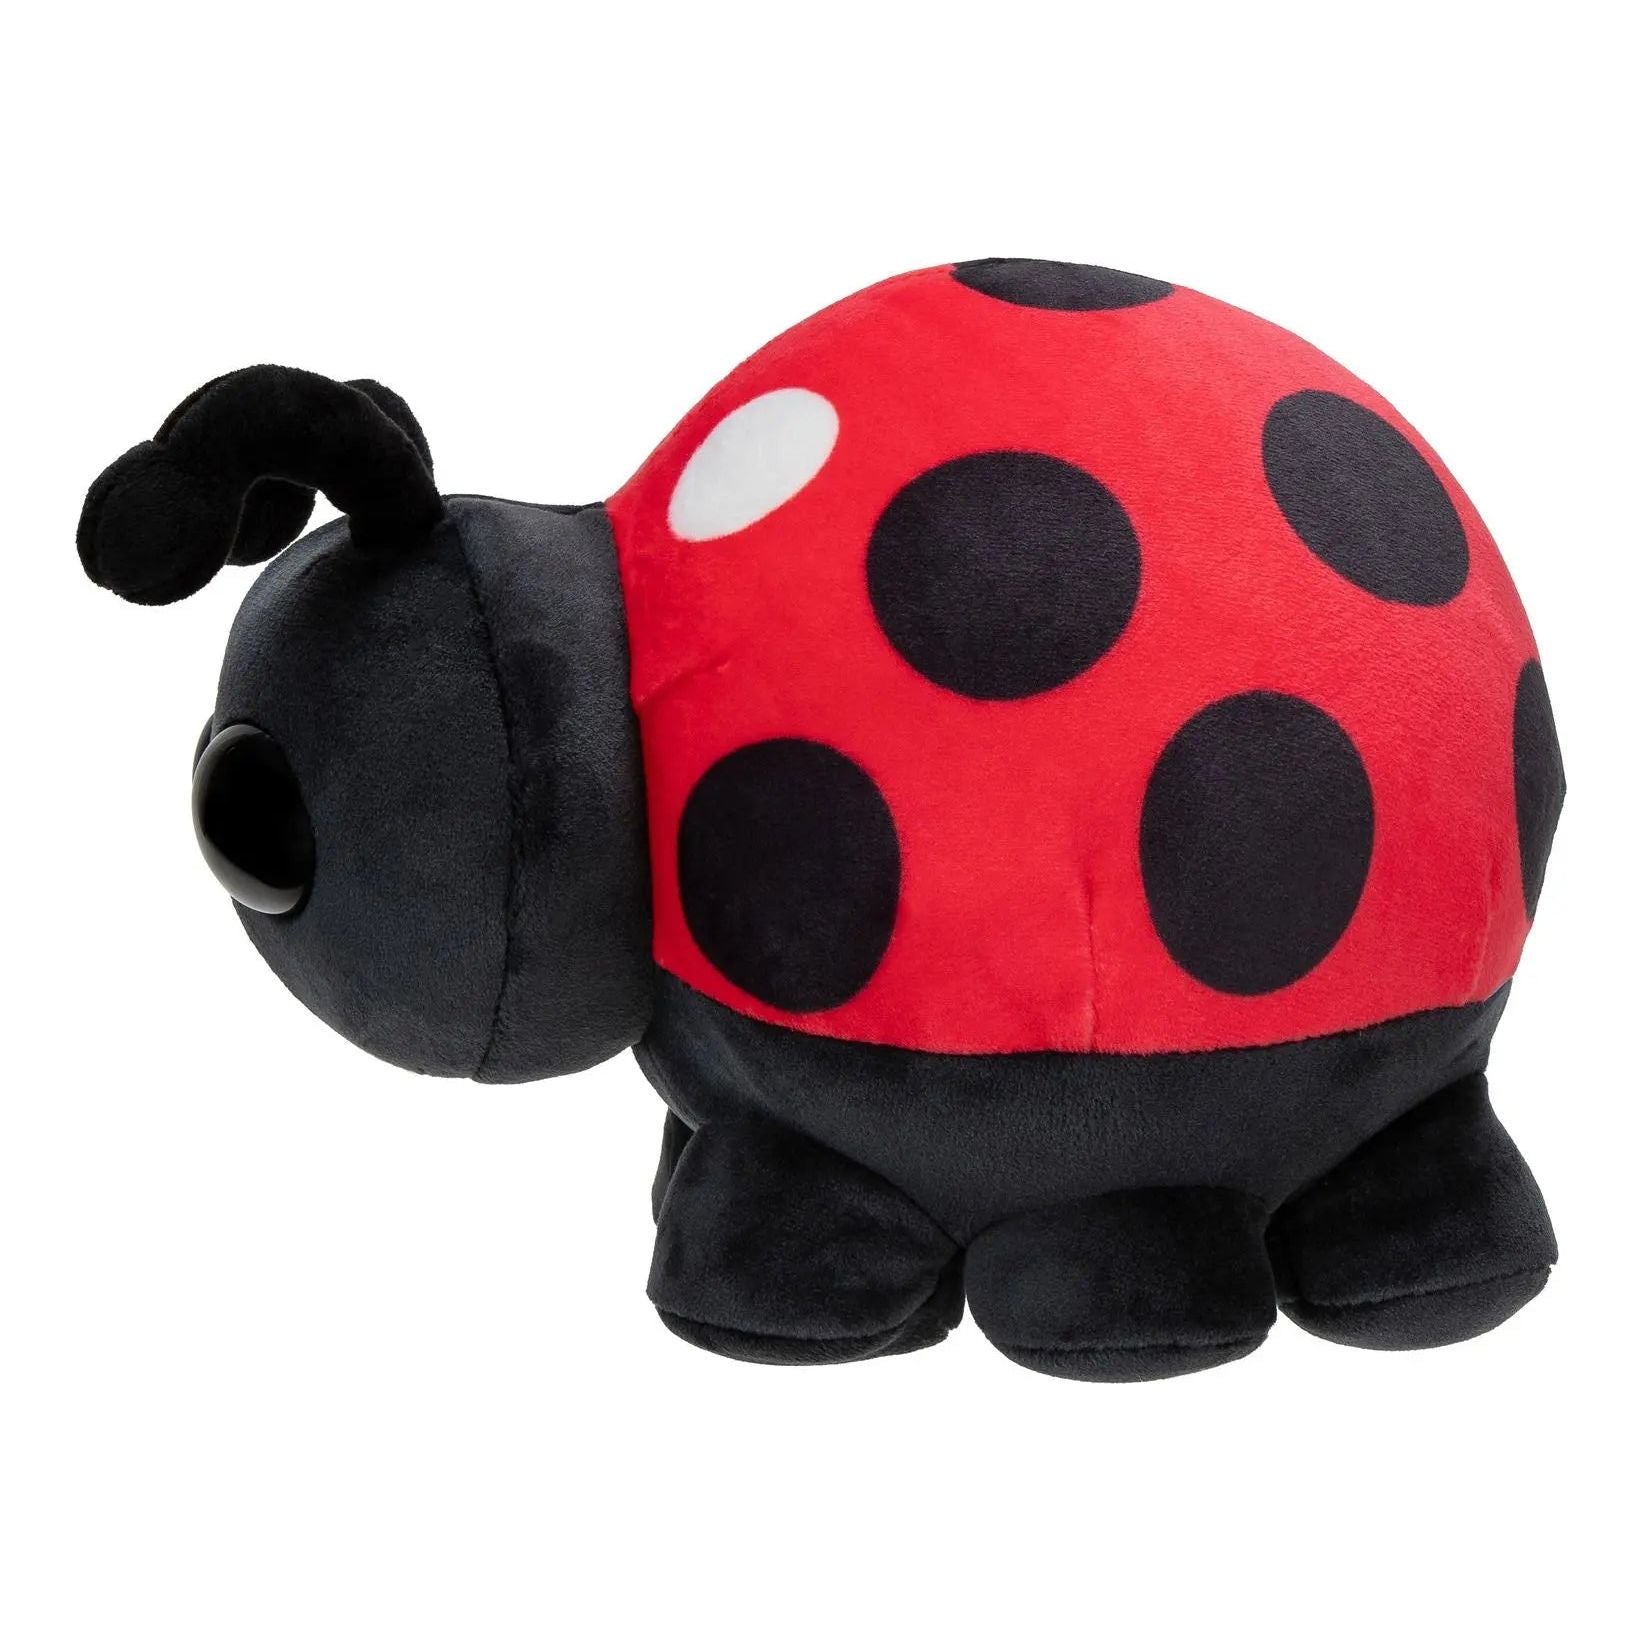 Adopt Me Collector Plush Ladybug Adopt Me